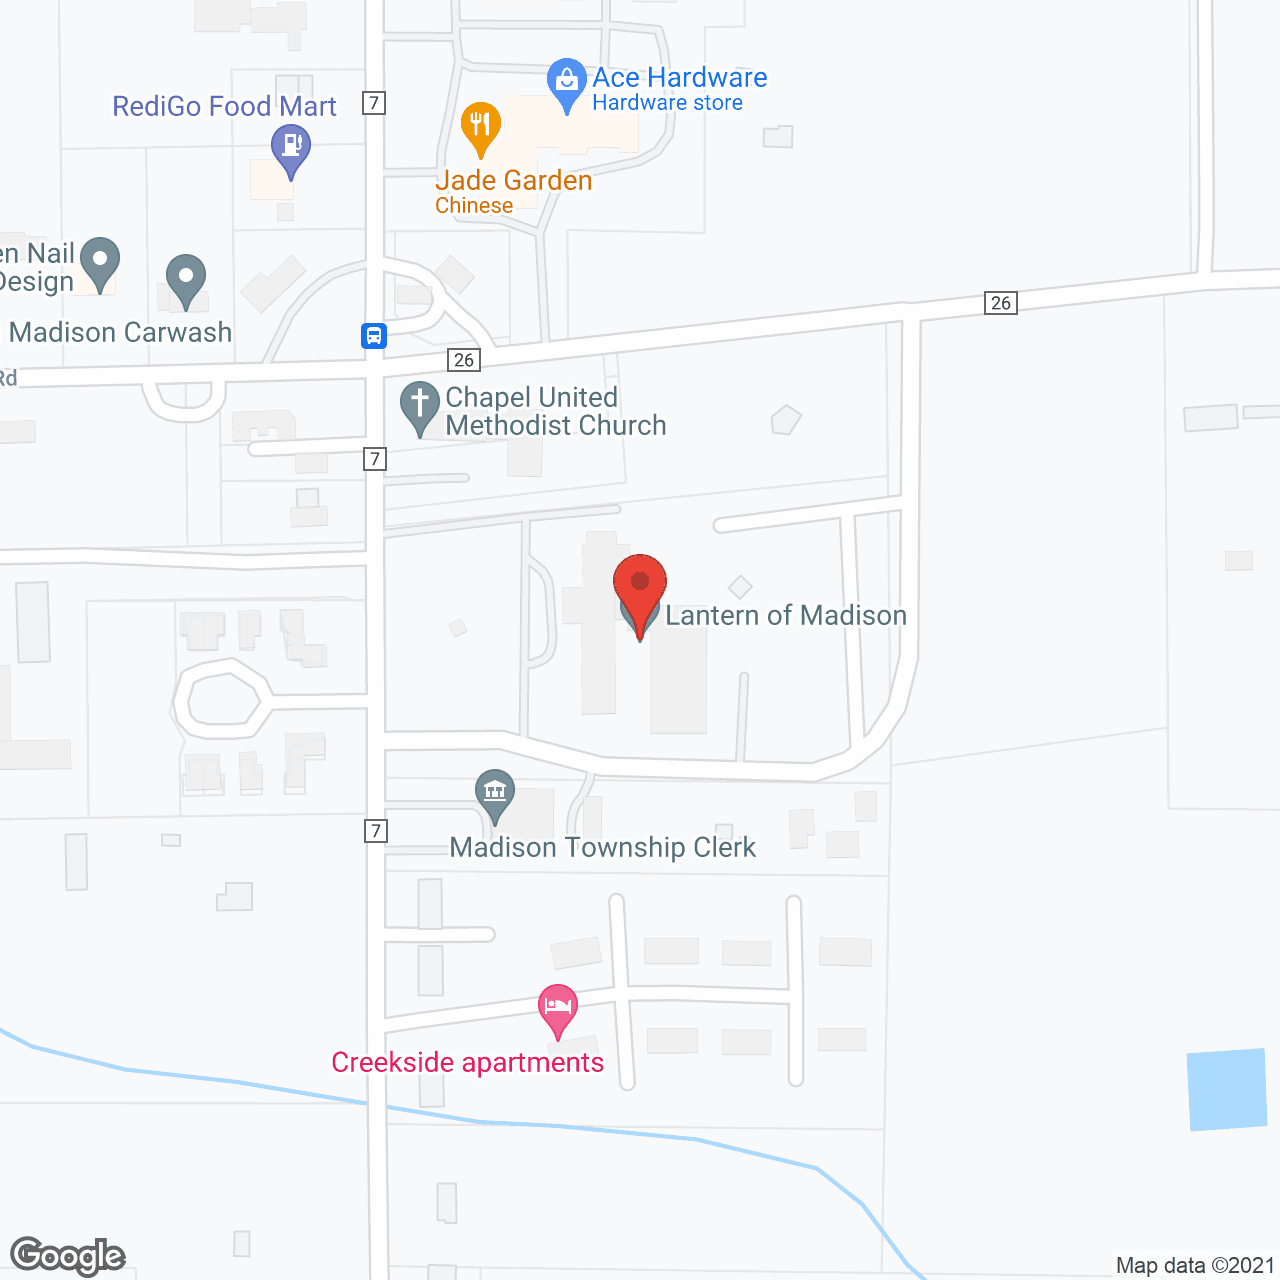 Lantern Of Madison in google map